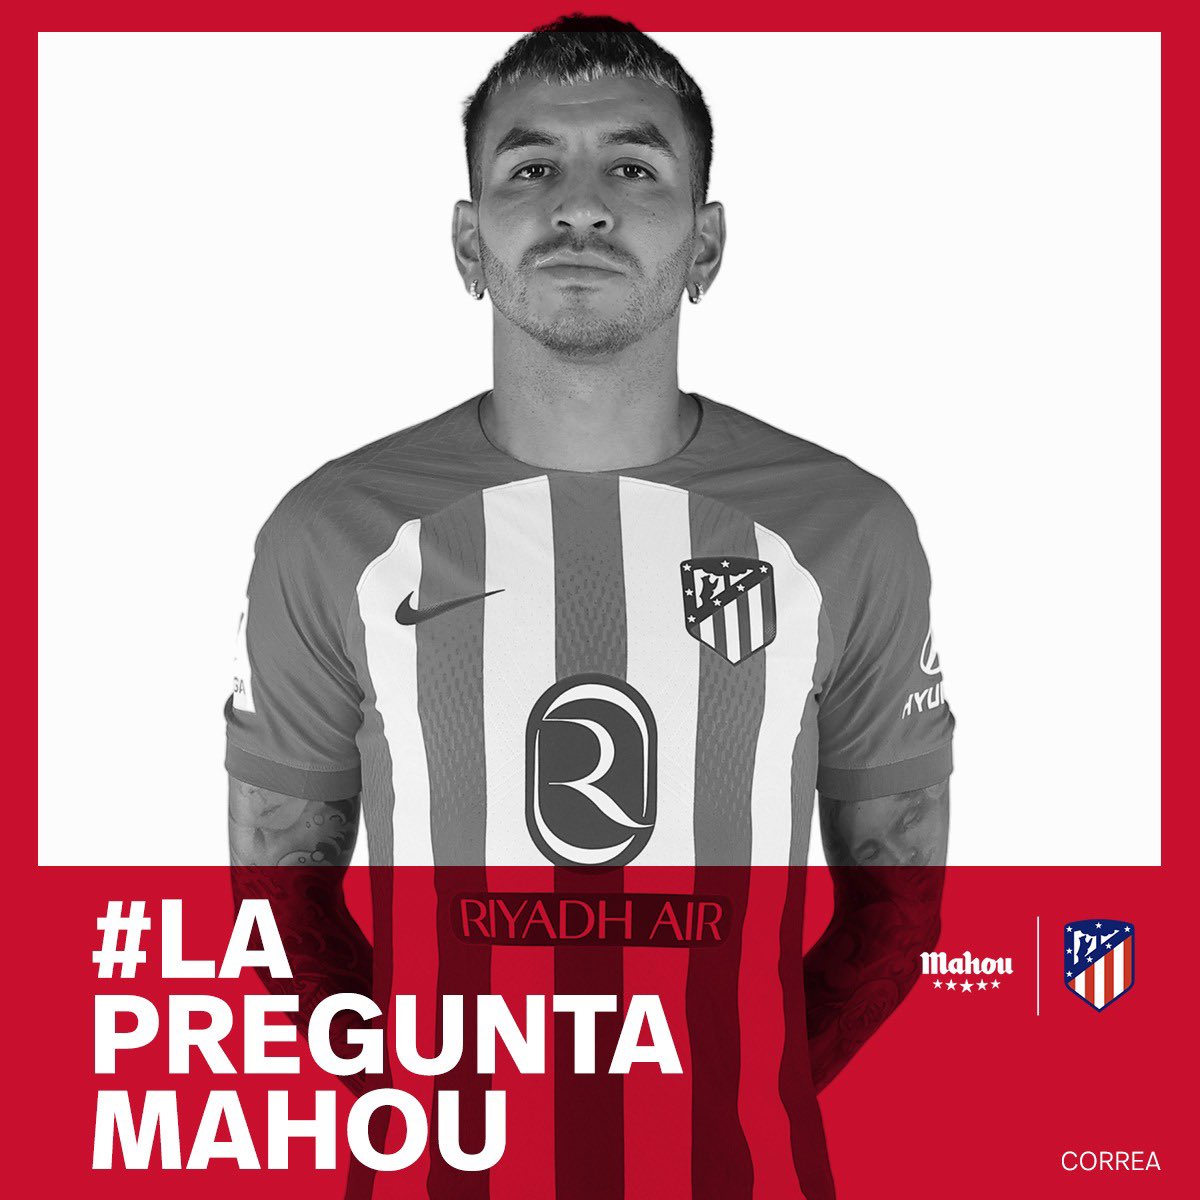 💬 ¡Tú puedes entrevistar a Correa! 😉

📲 Participa con el hashtag #LaPreguntaMahou y pregunta a nuestro jugador.